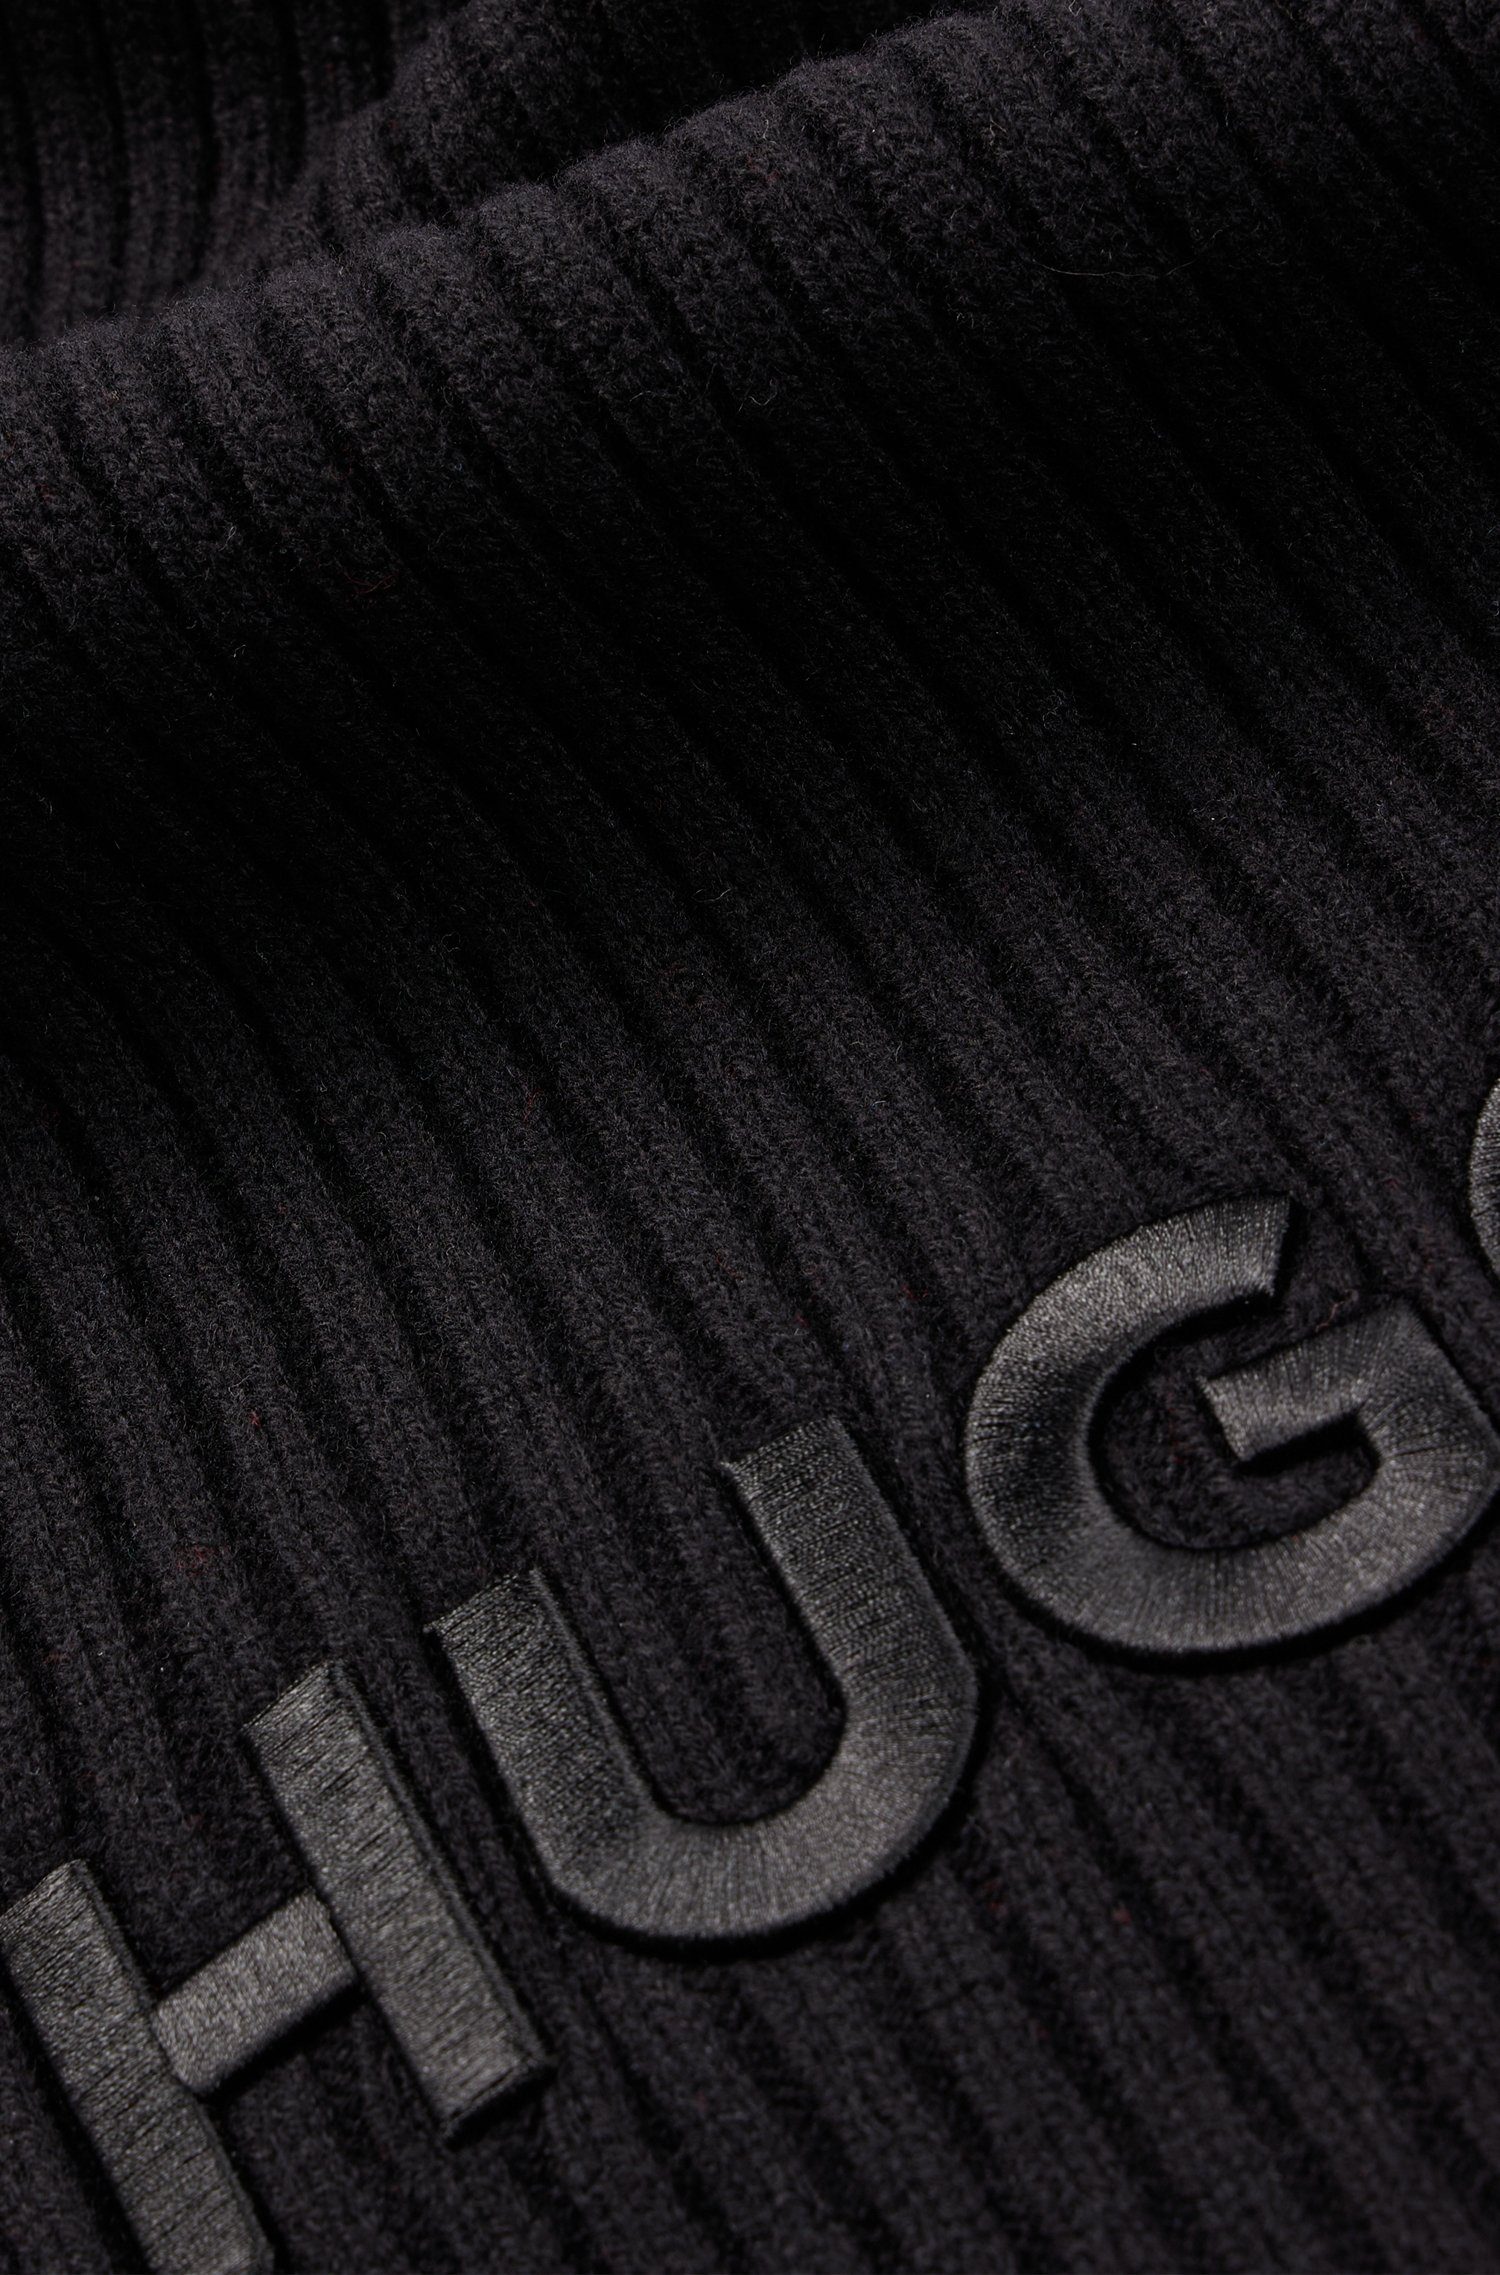 HUGO-Logoschriftzug Zunio-1, Black HUGO Schal mit